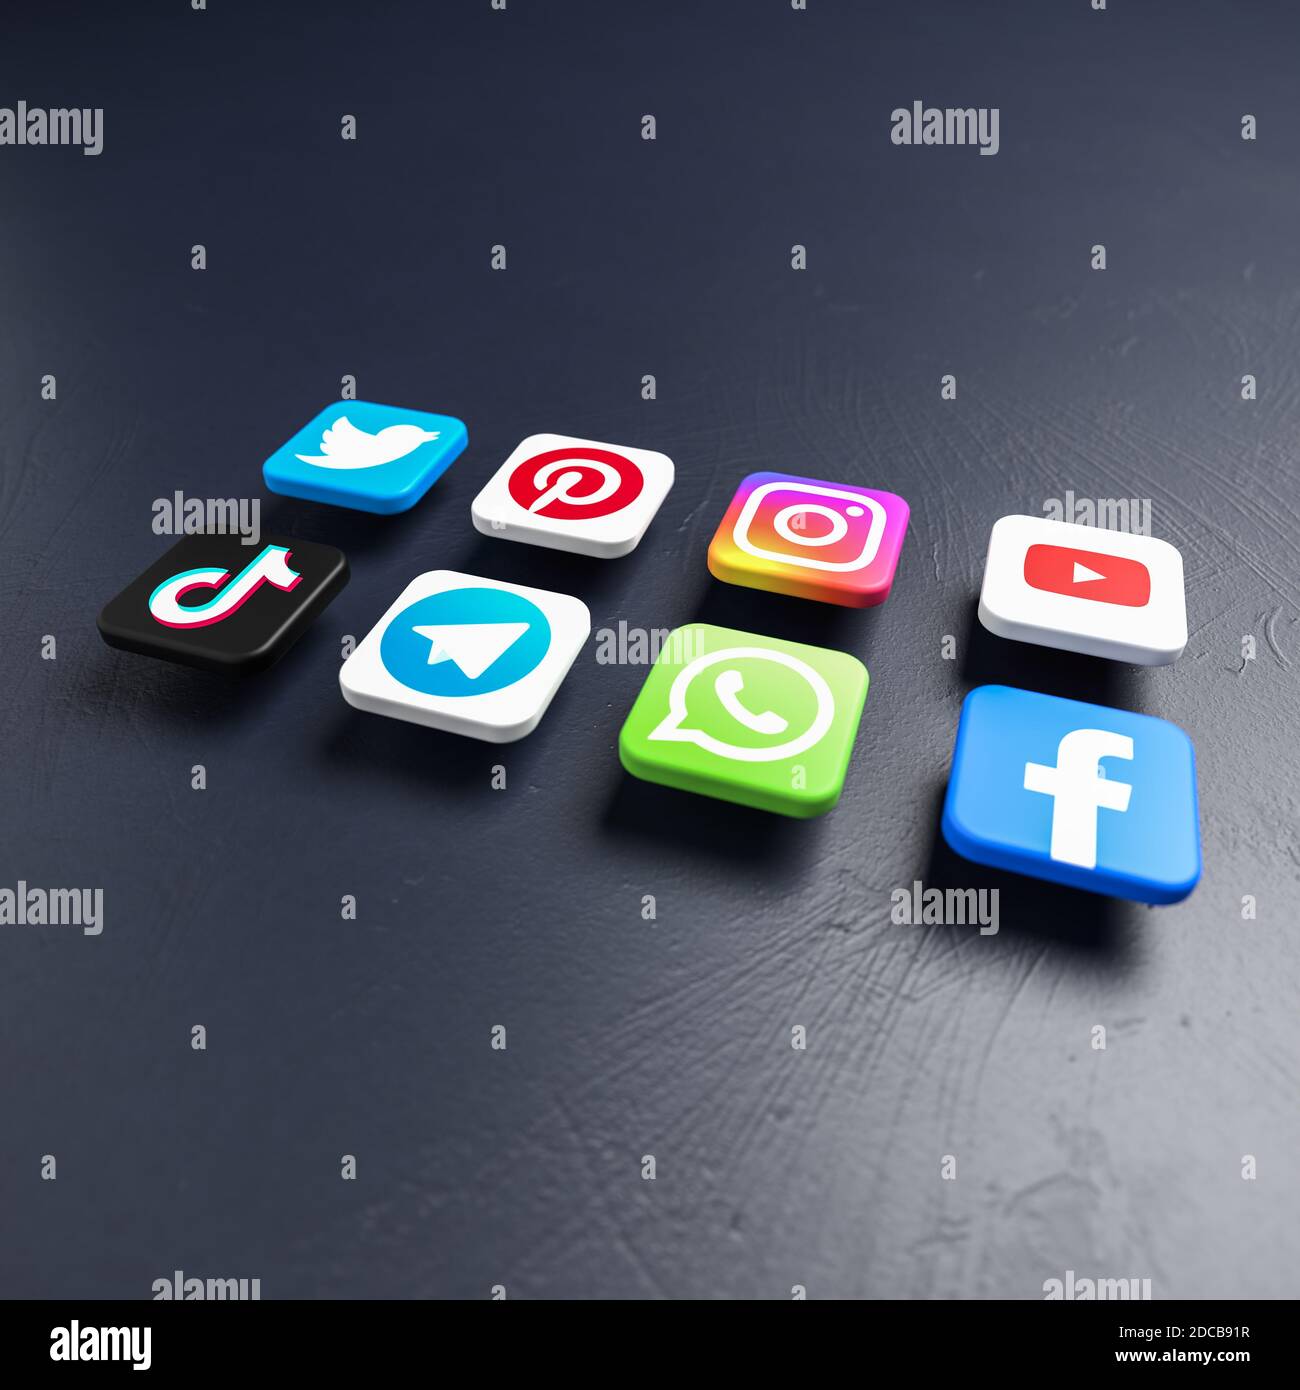 Biểu tượng mạng xã hội: Bức ảnh này sẽ giúp bạn tìm hiểu về những biểu tượng của mạng xã hội phổ biến nhất trên thế giới, bao gồm Facebook, Twitter, Instagram và YouTube. Bức ảnh này cũng sẽ giúp bạn nhận ra sức mạnh của mạng xã hội và tầm quan trọng của các nền tảng này trong cuộc sống hàng ngày của chúng ta.